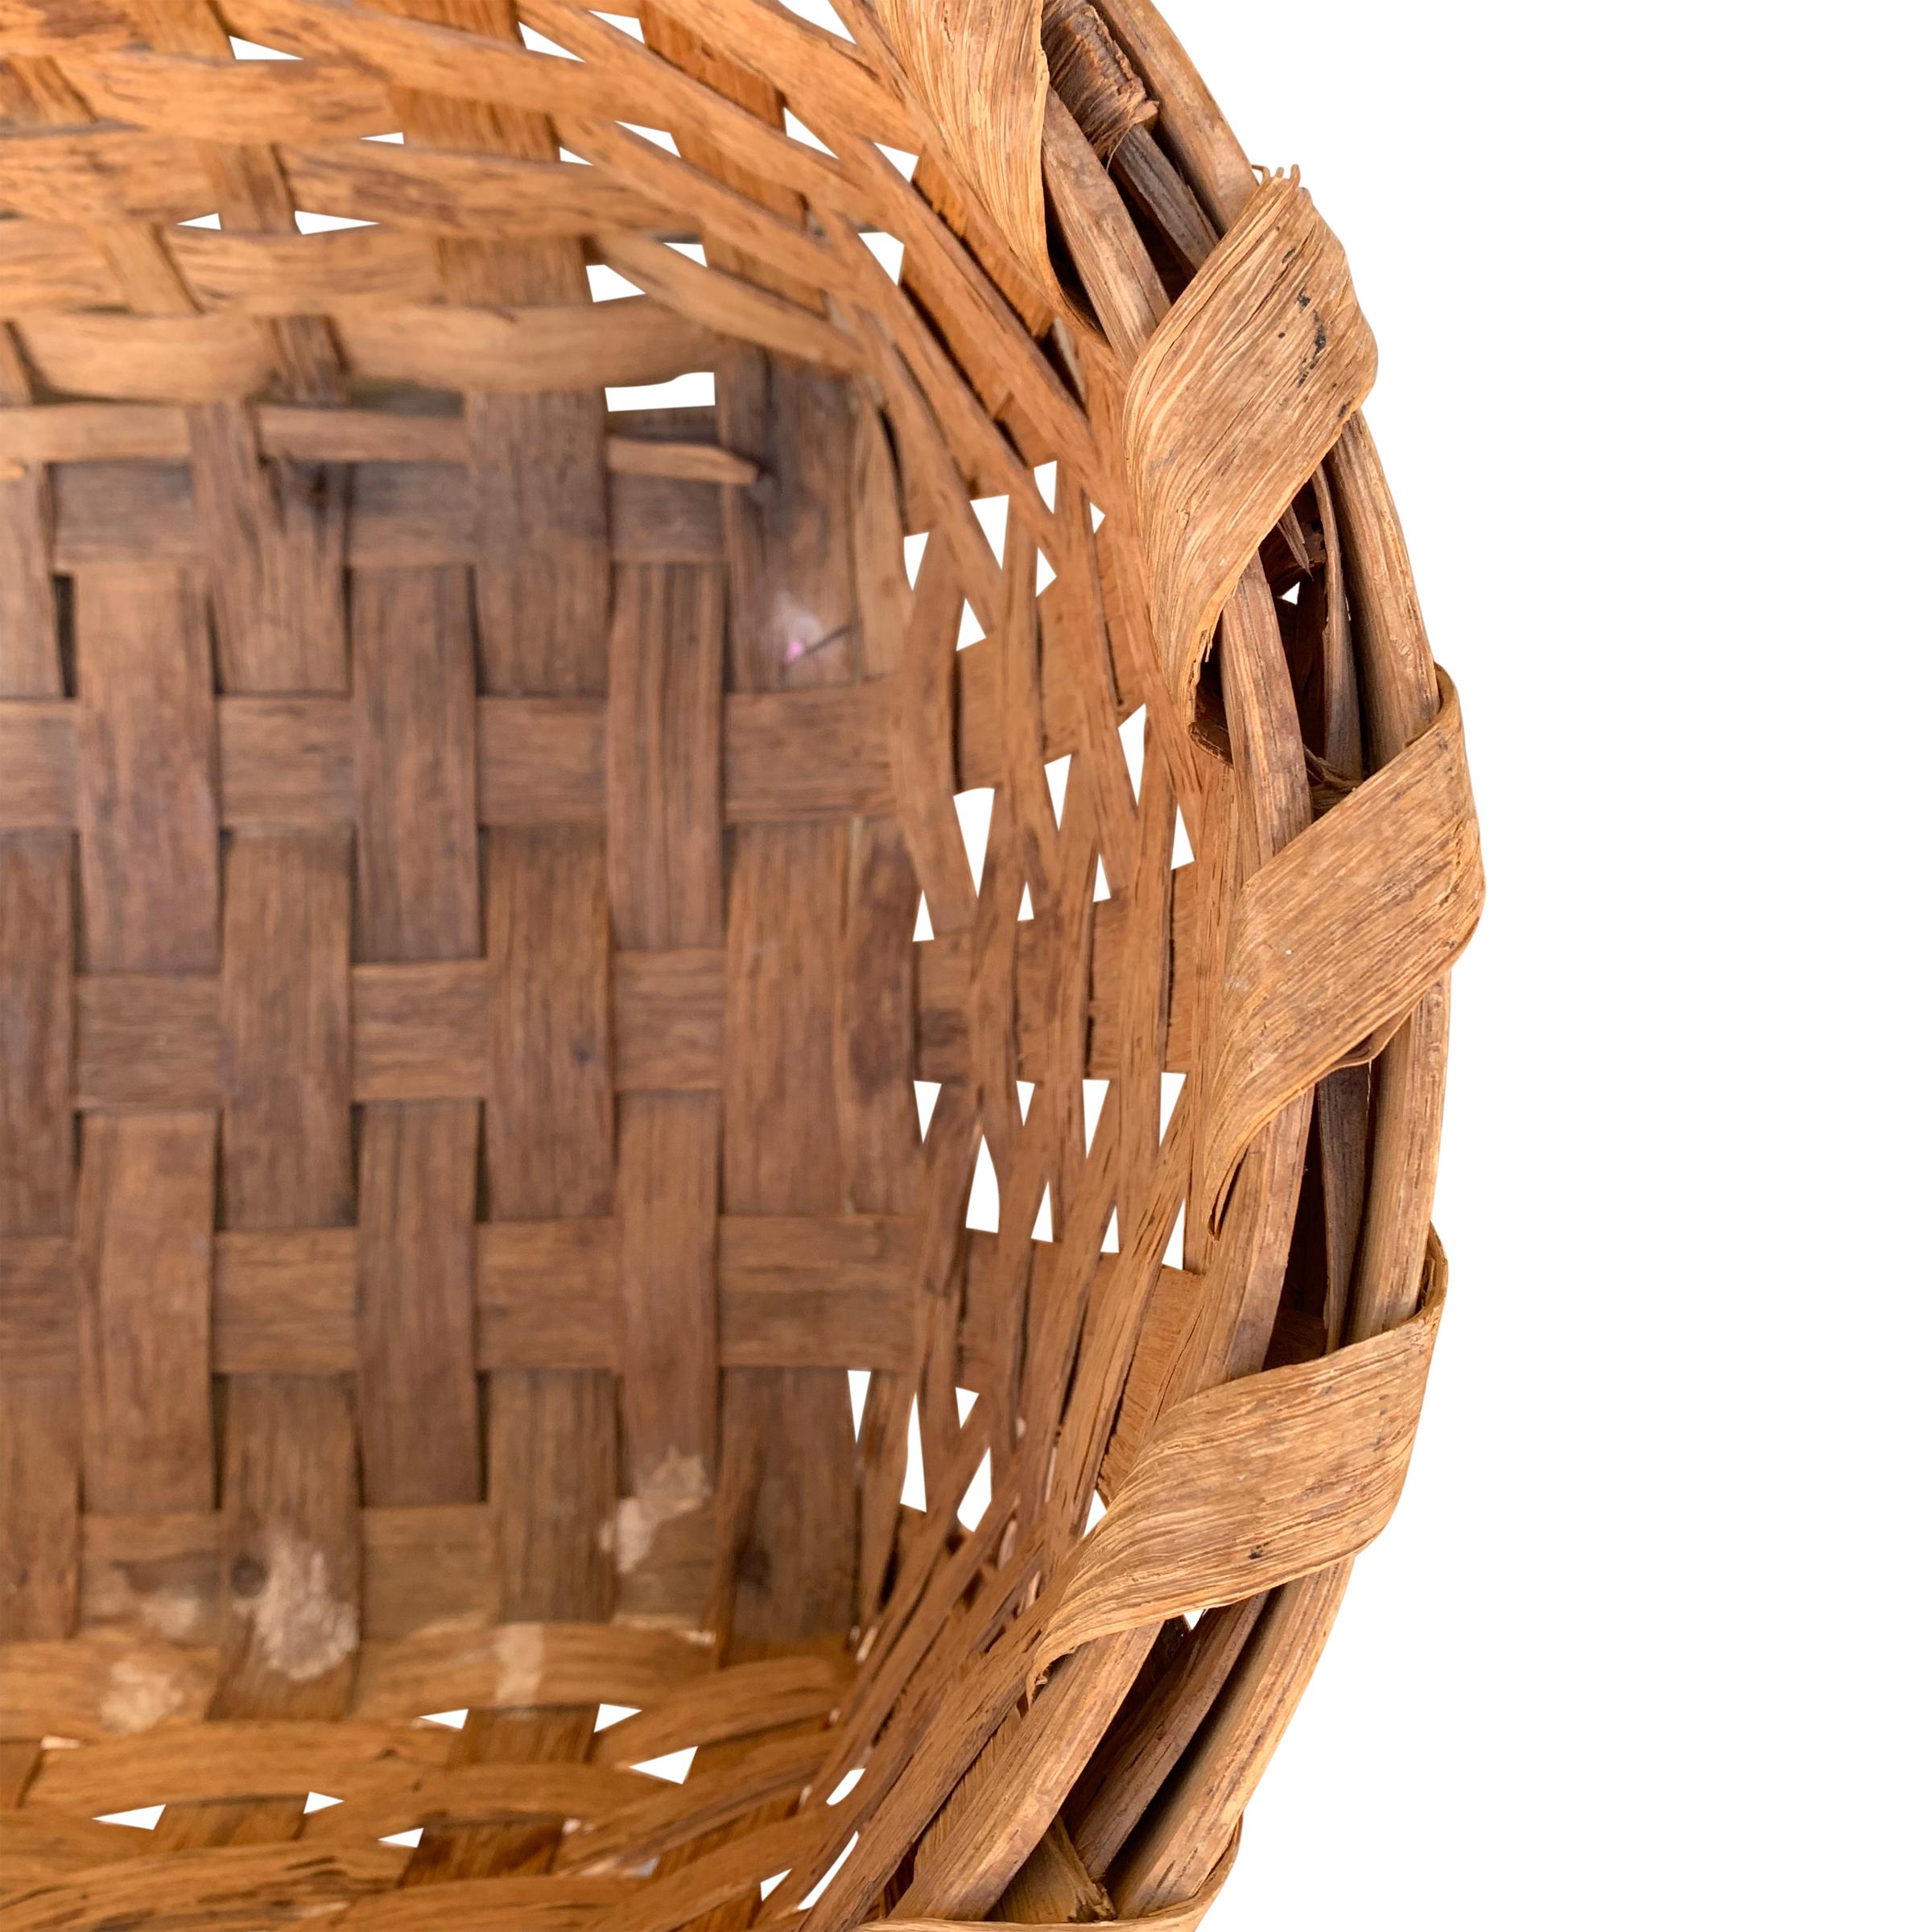 Early 20th Century American Oak Splint Gathering Basket 2